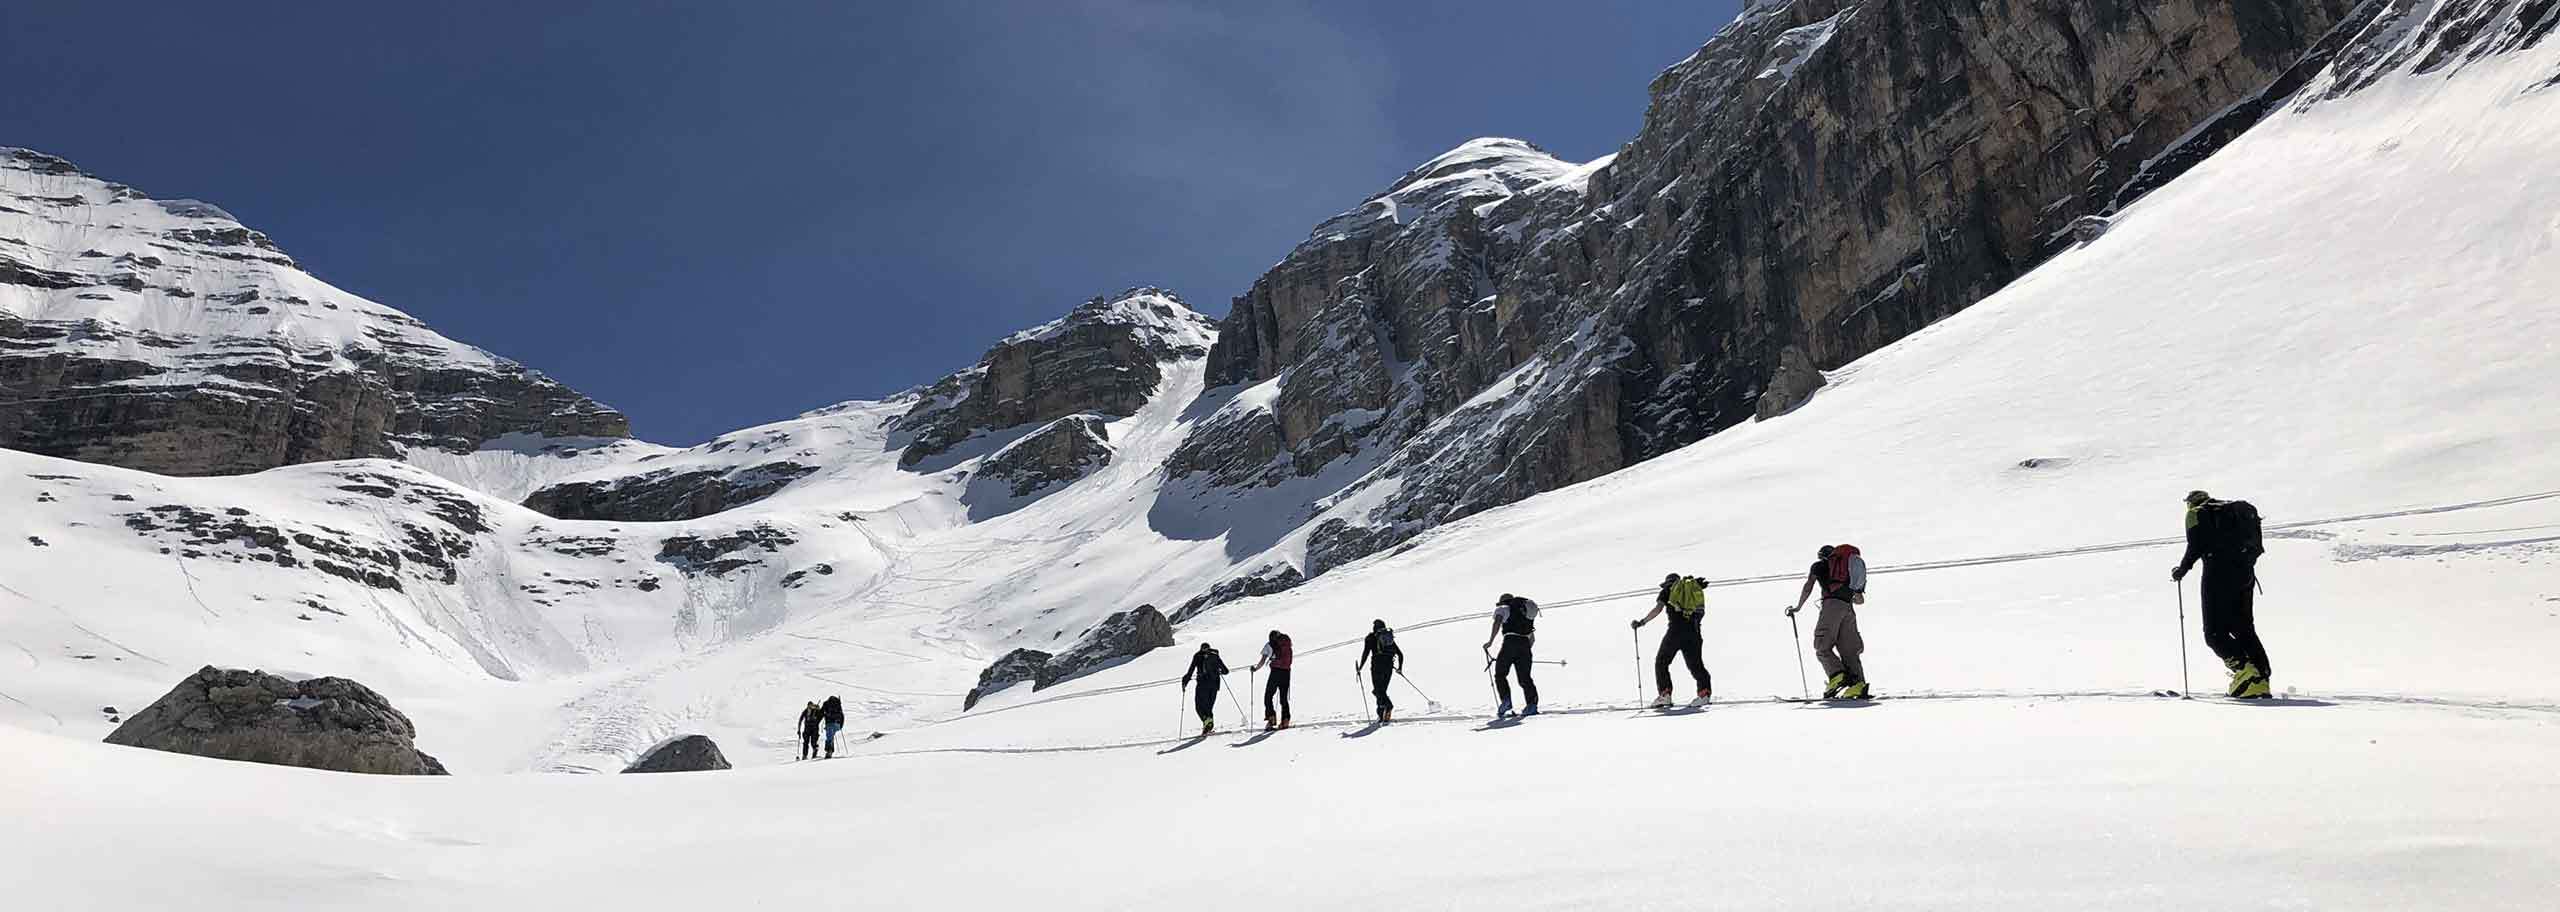 Ski Mountaineering in Brenta Dolomites, Ski Touring with a Mountain Guide